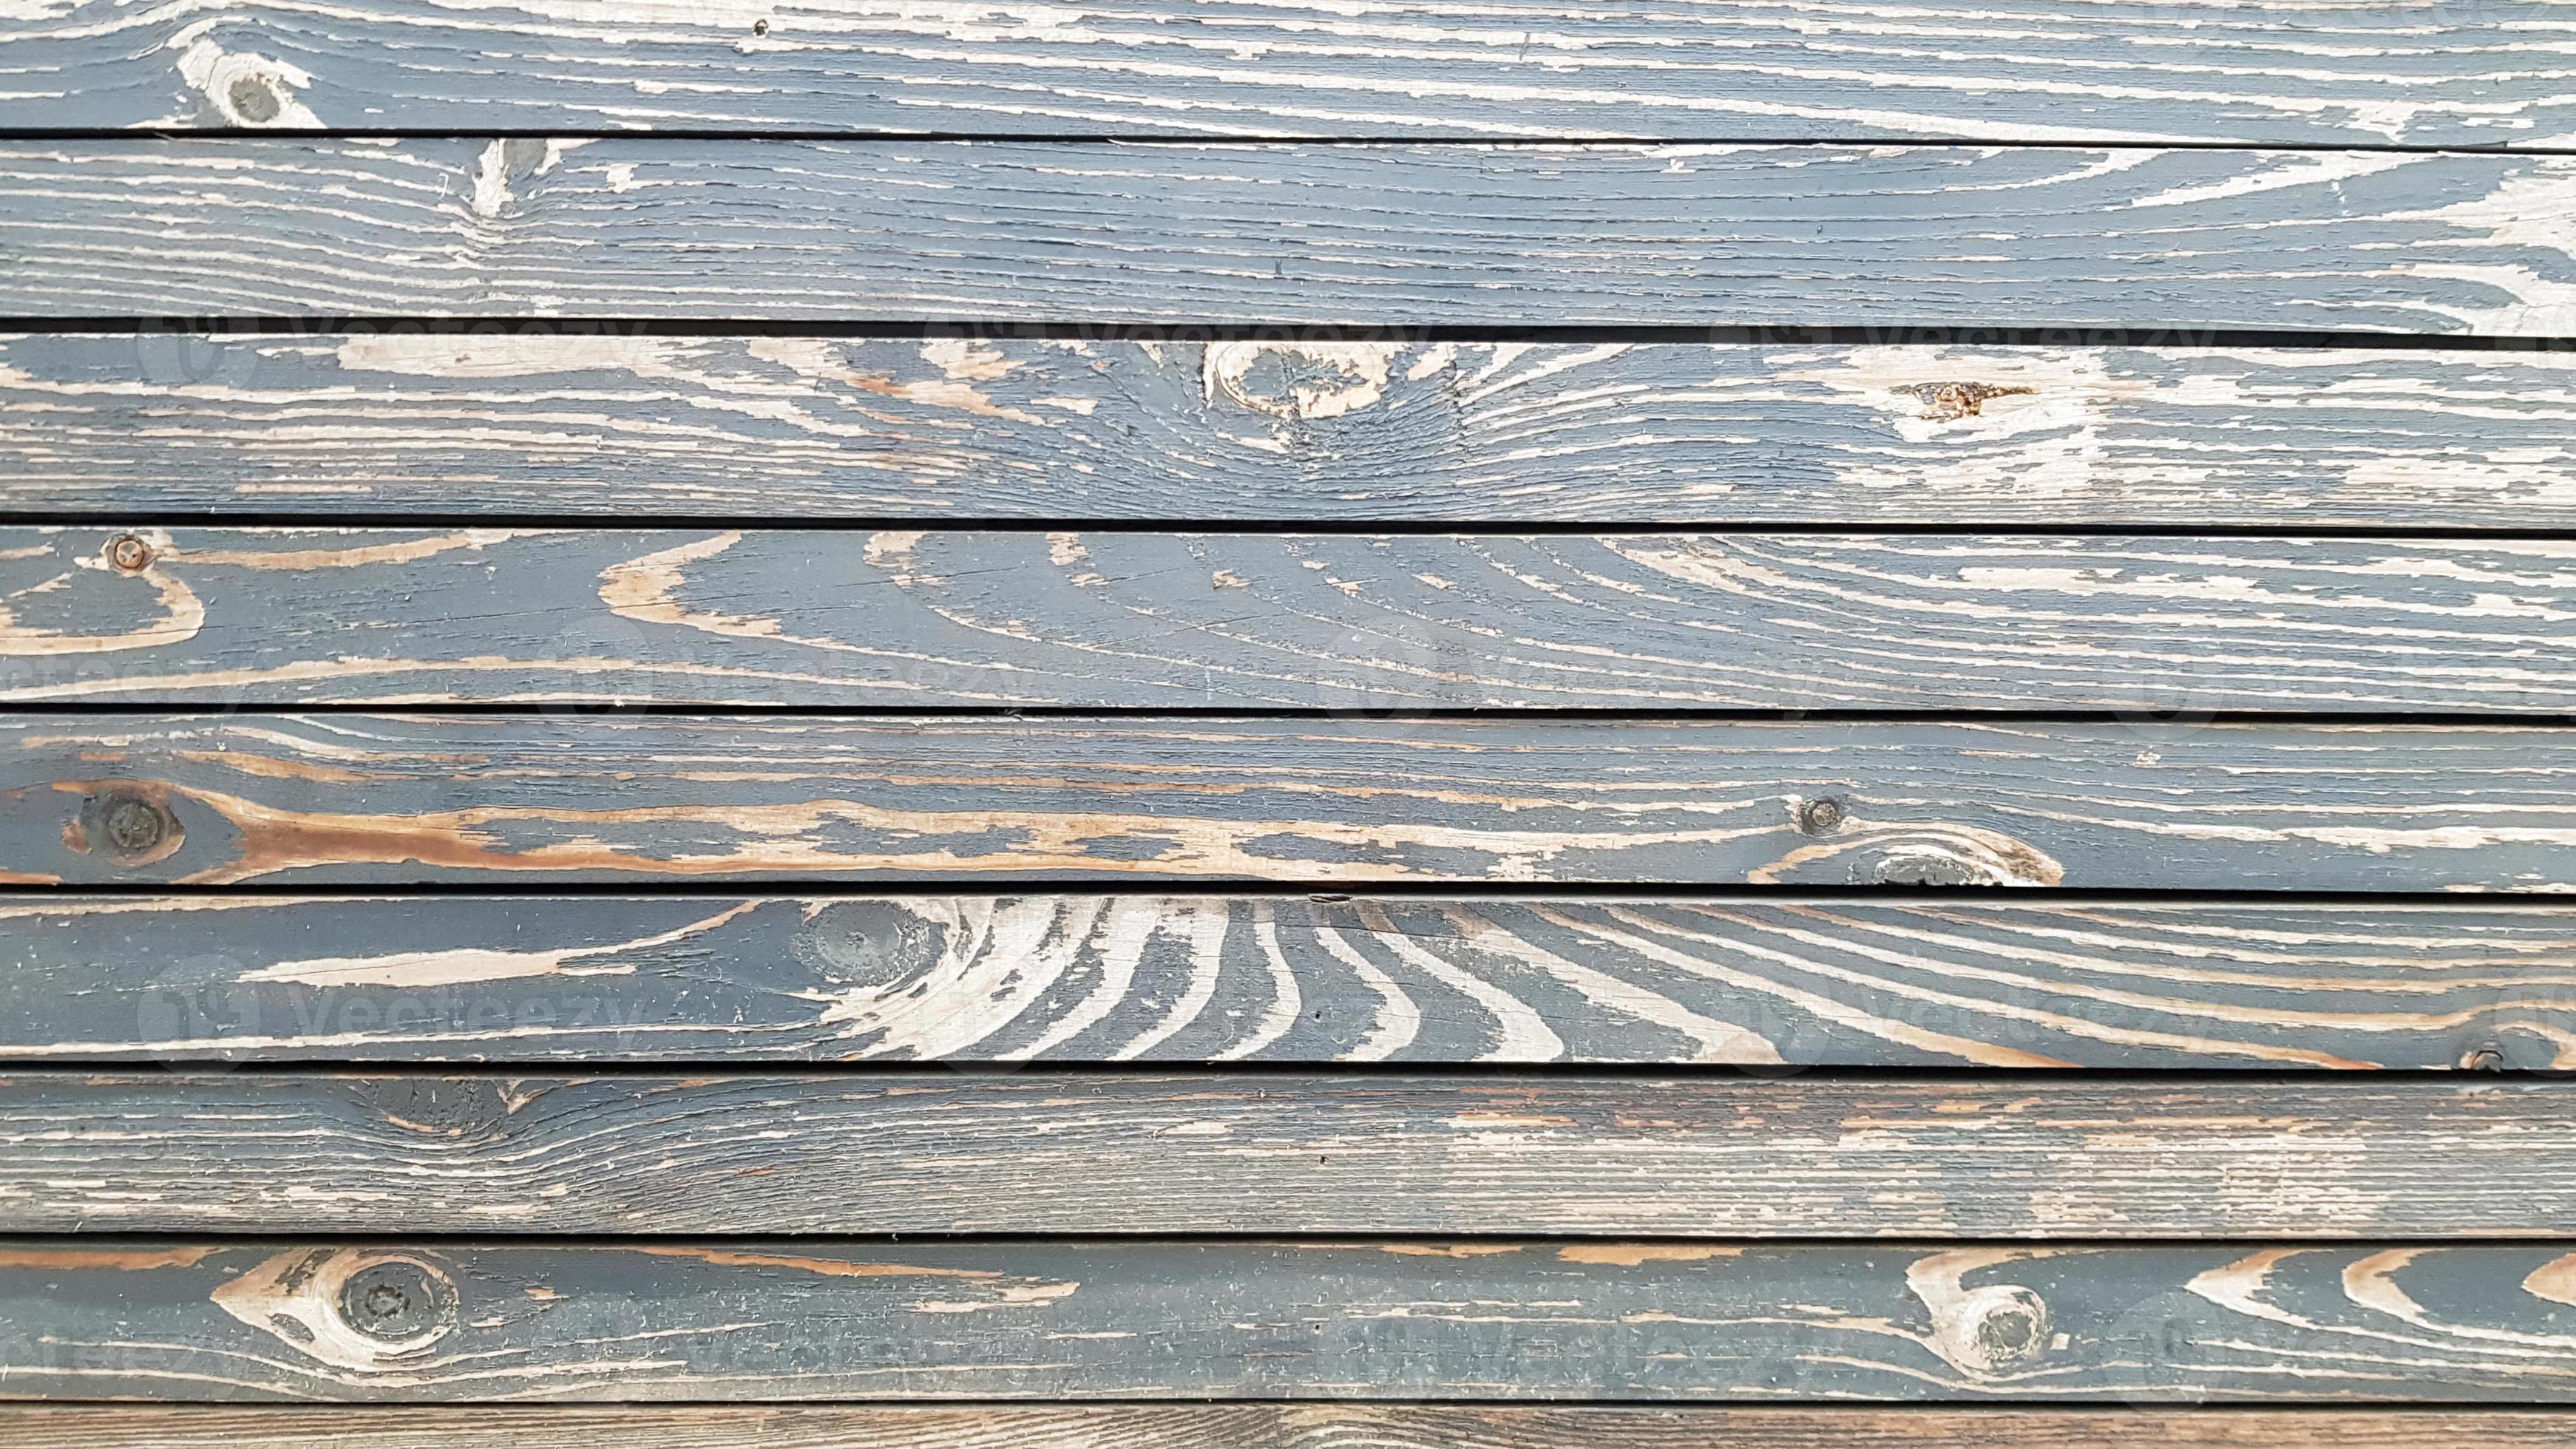 horizontale houtstructuur. houten planken. horizontale schuur houten muur textuur. gerestaureerde oude houten plank. huis design element in een moderne vintage stijl. hardhout is donkerbruin. detailopname 4536134 Stockfoto